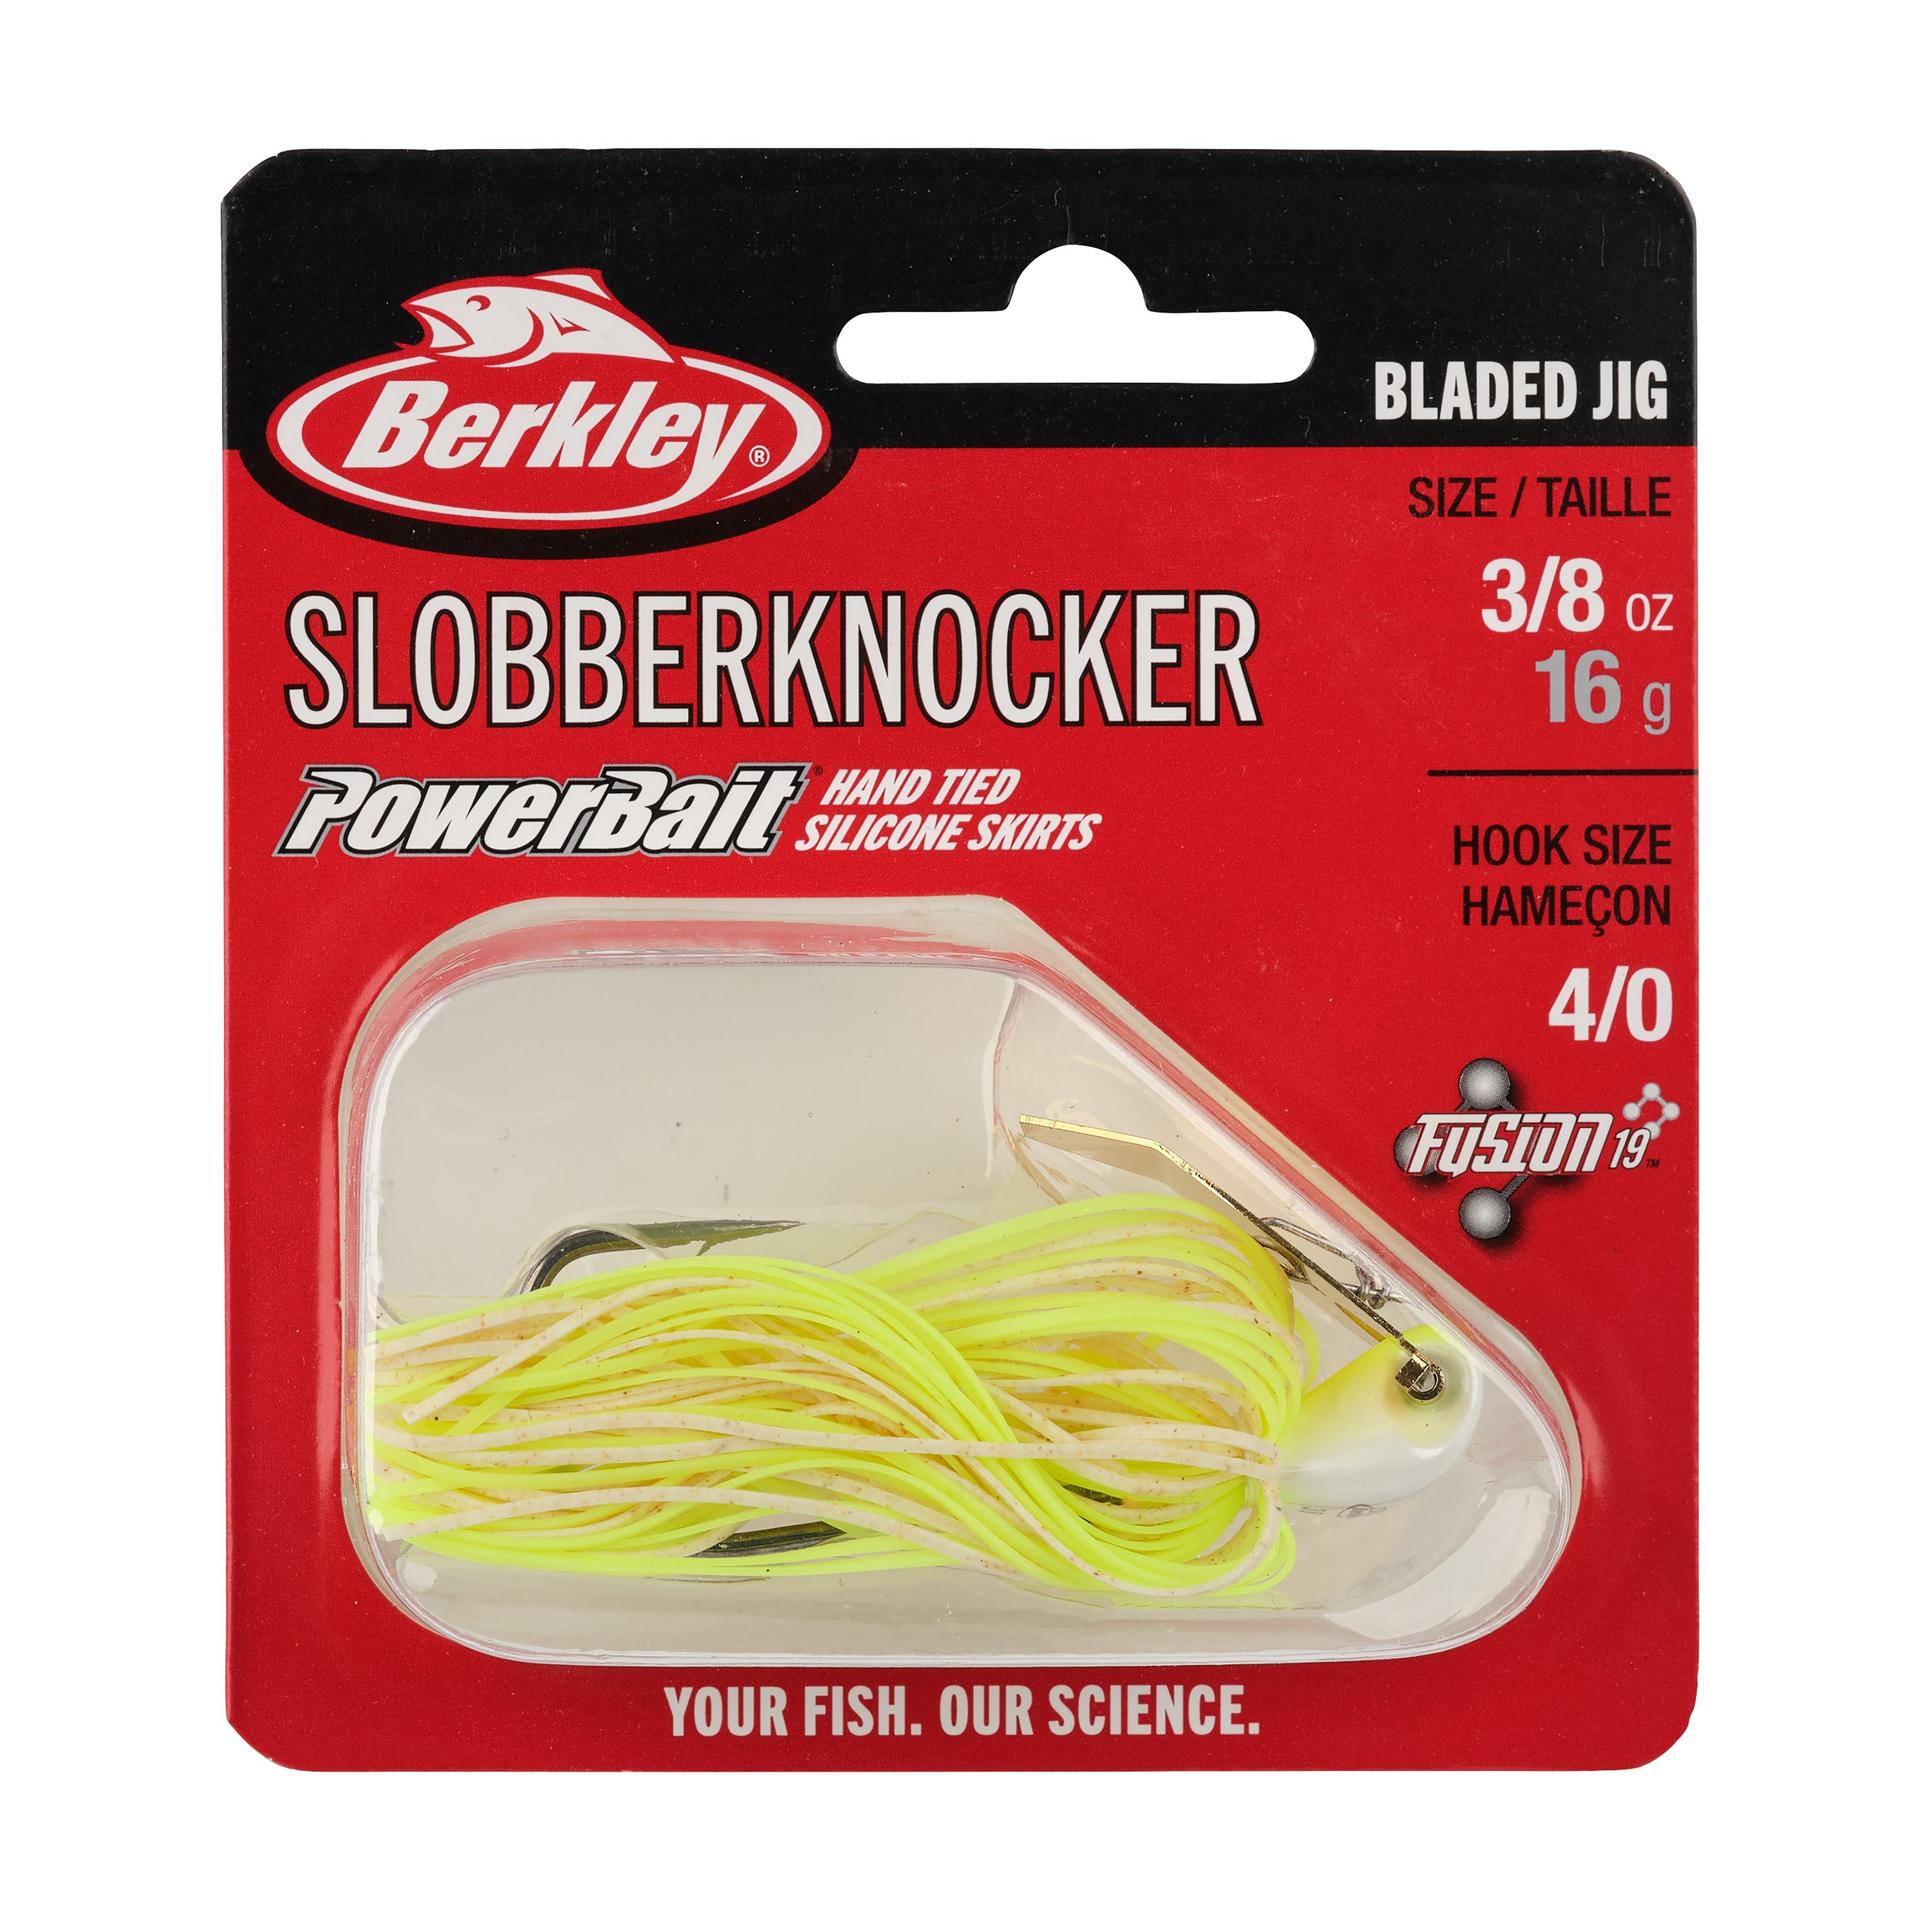 Berkley SlobberKnocker 3 8oz WhiteChartreuse PKG | Berkley Fishing